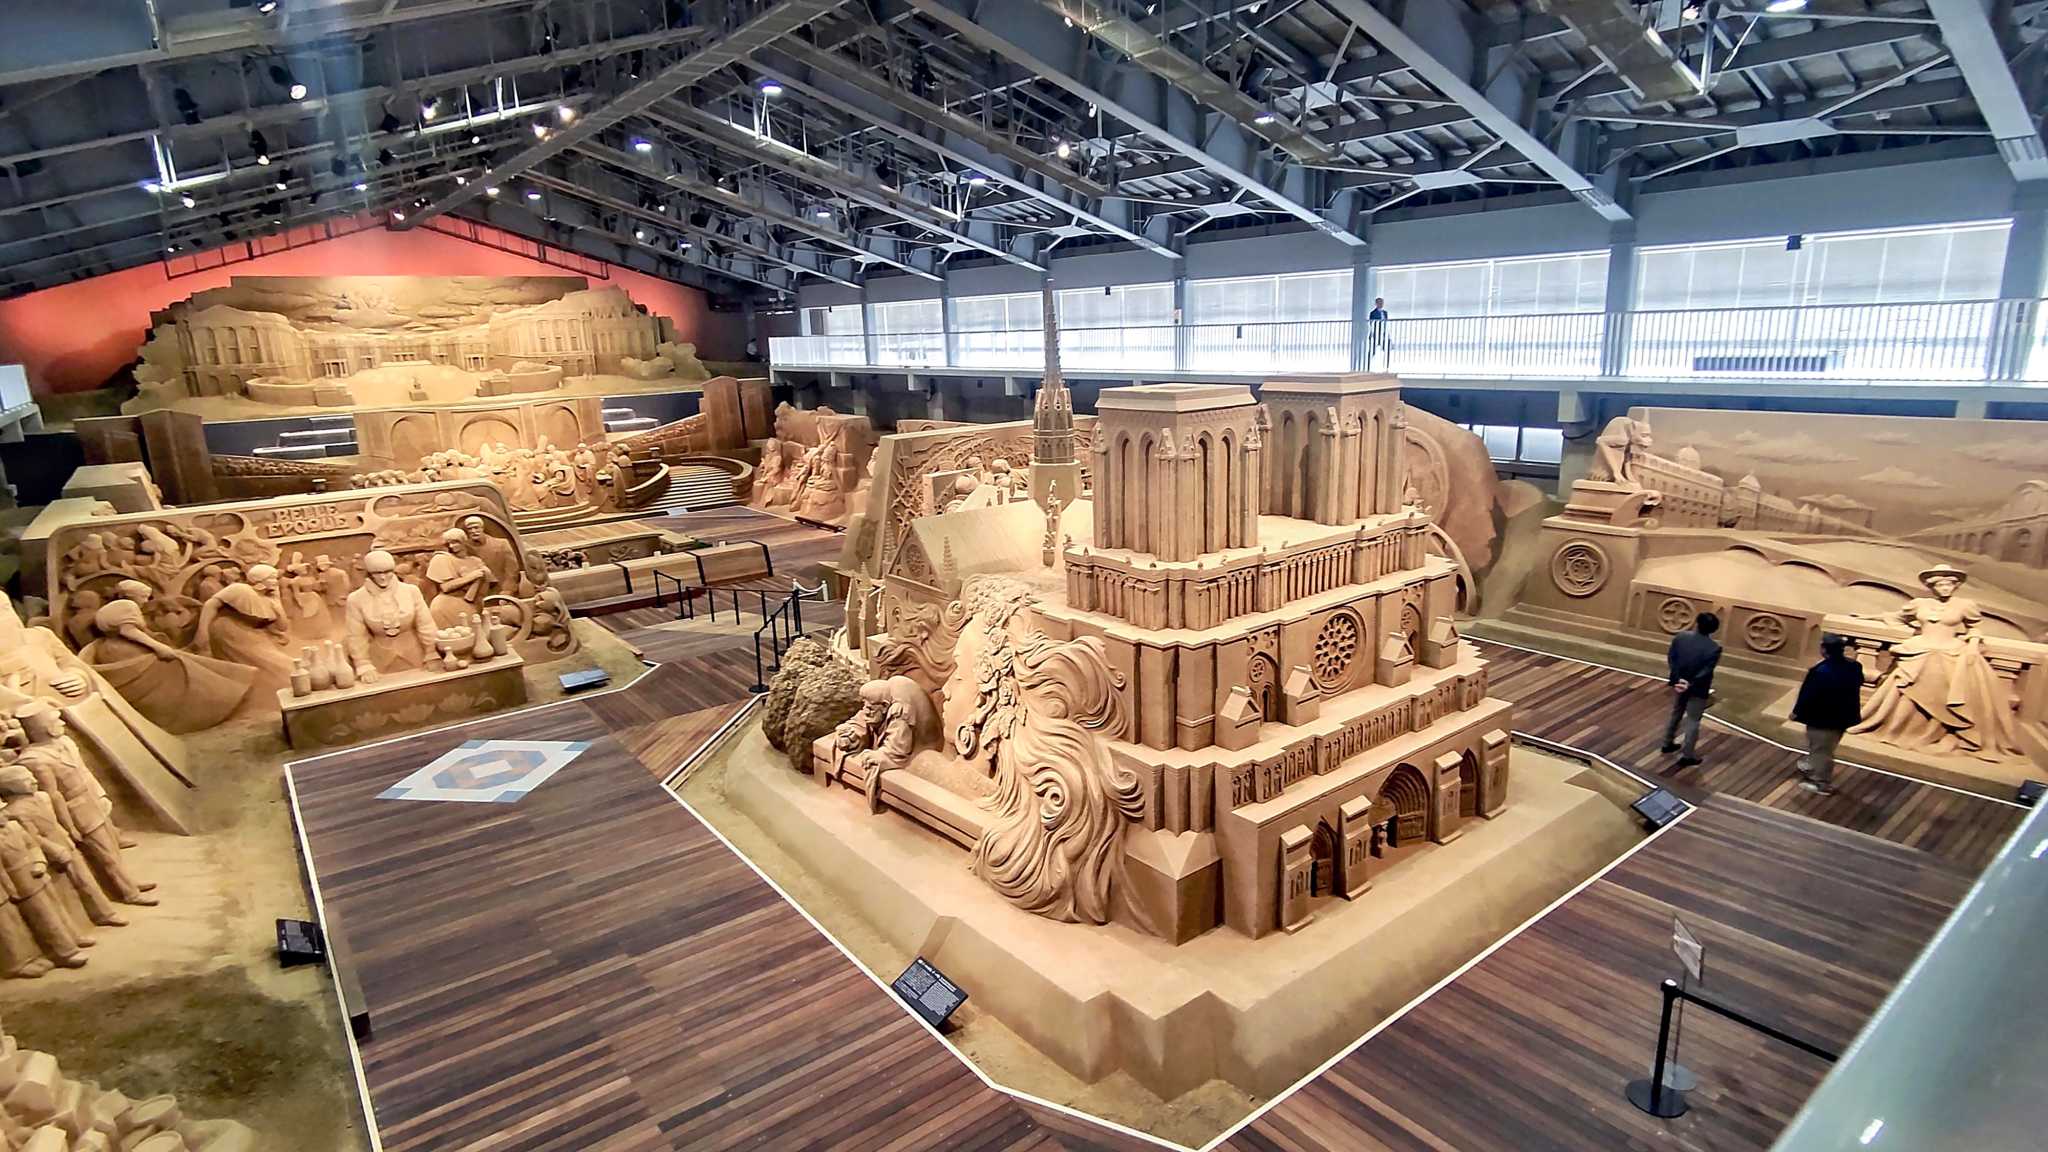 Japan’s sand sculpture museum celebrates France